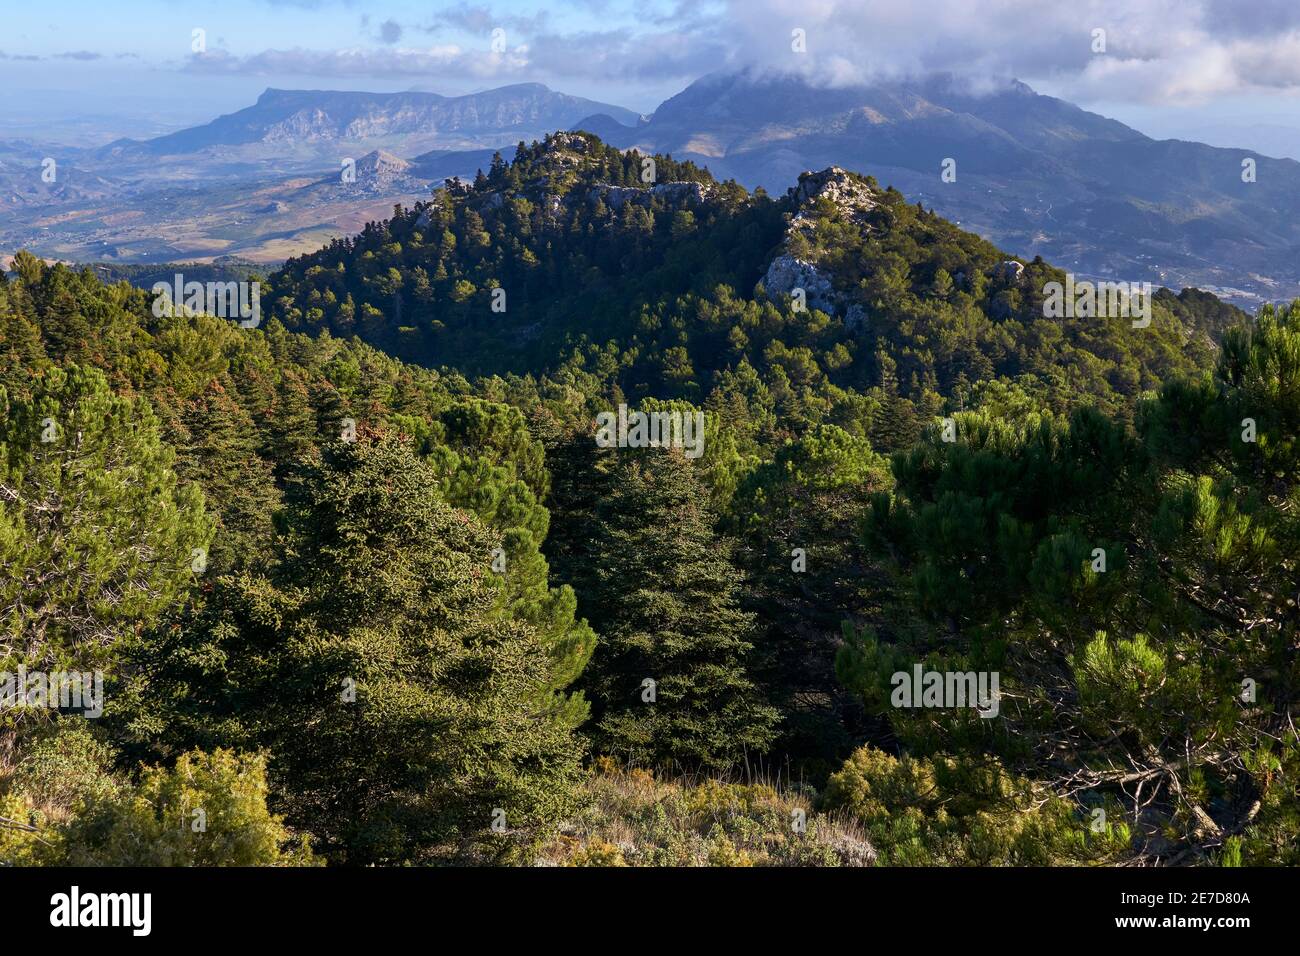 La foresta di Pinsapos (Abies Pinsapo) nella foresta di abeti Yunquera del parco nazionale della Sierra de las Nieves a Malaga. Andalusía, Spagna Foto Stock